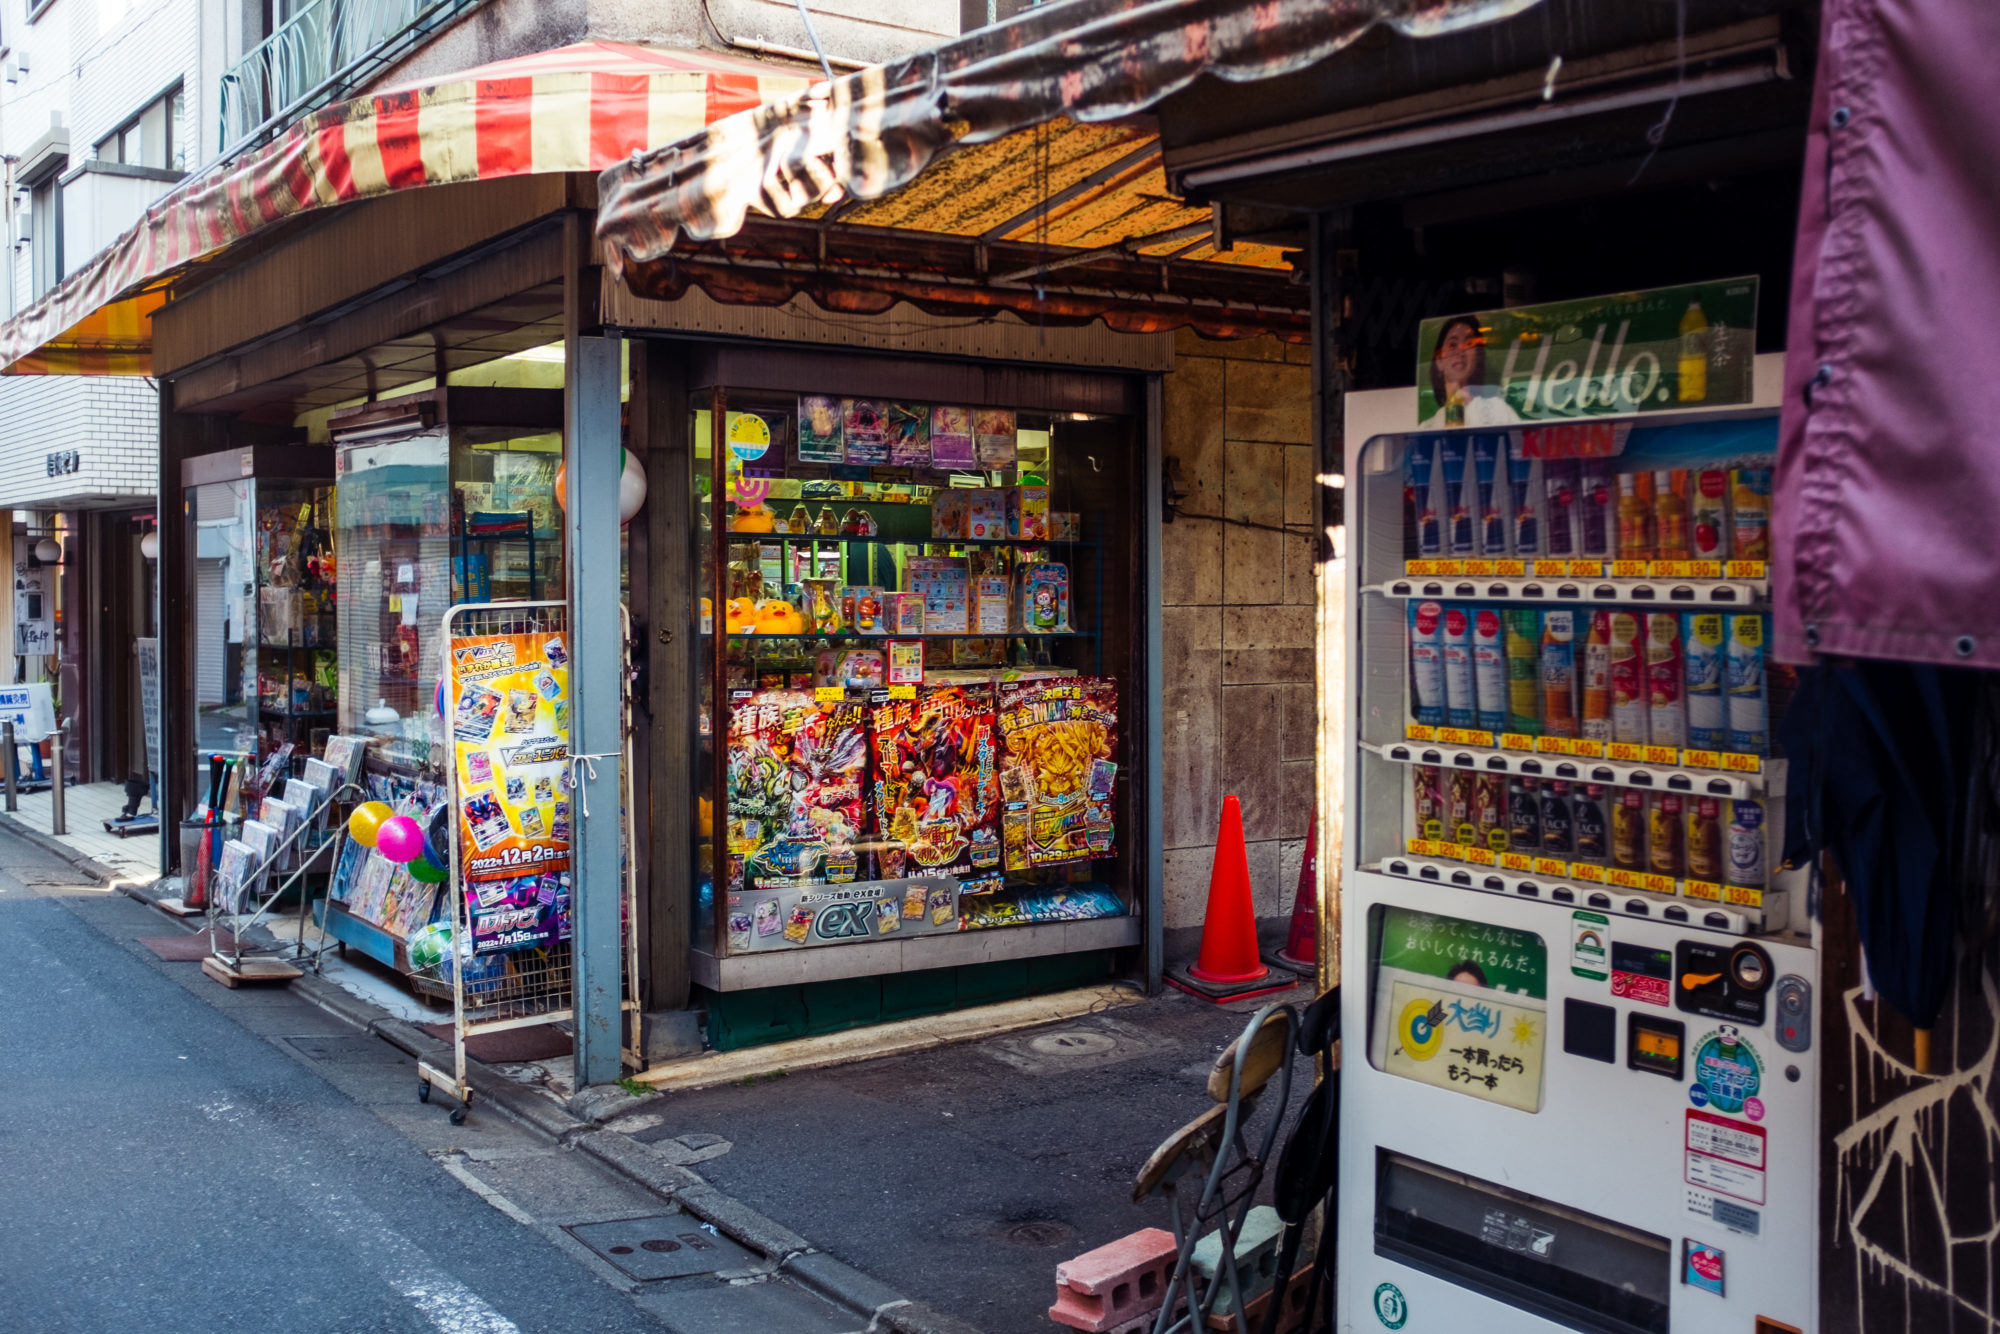 Shanty Town in Tokyo: Daitabashi